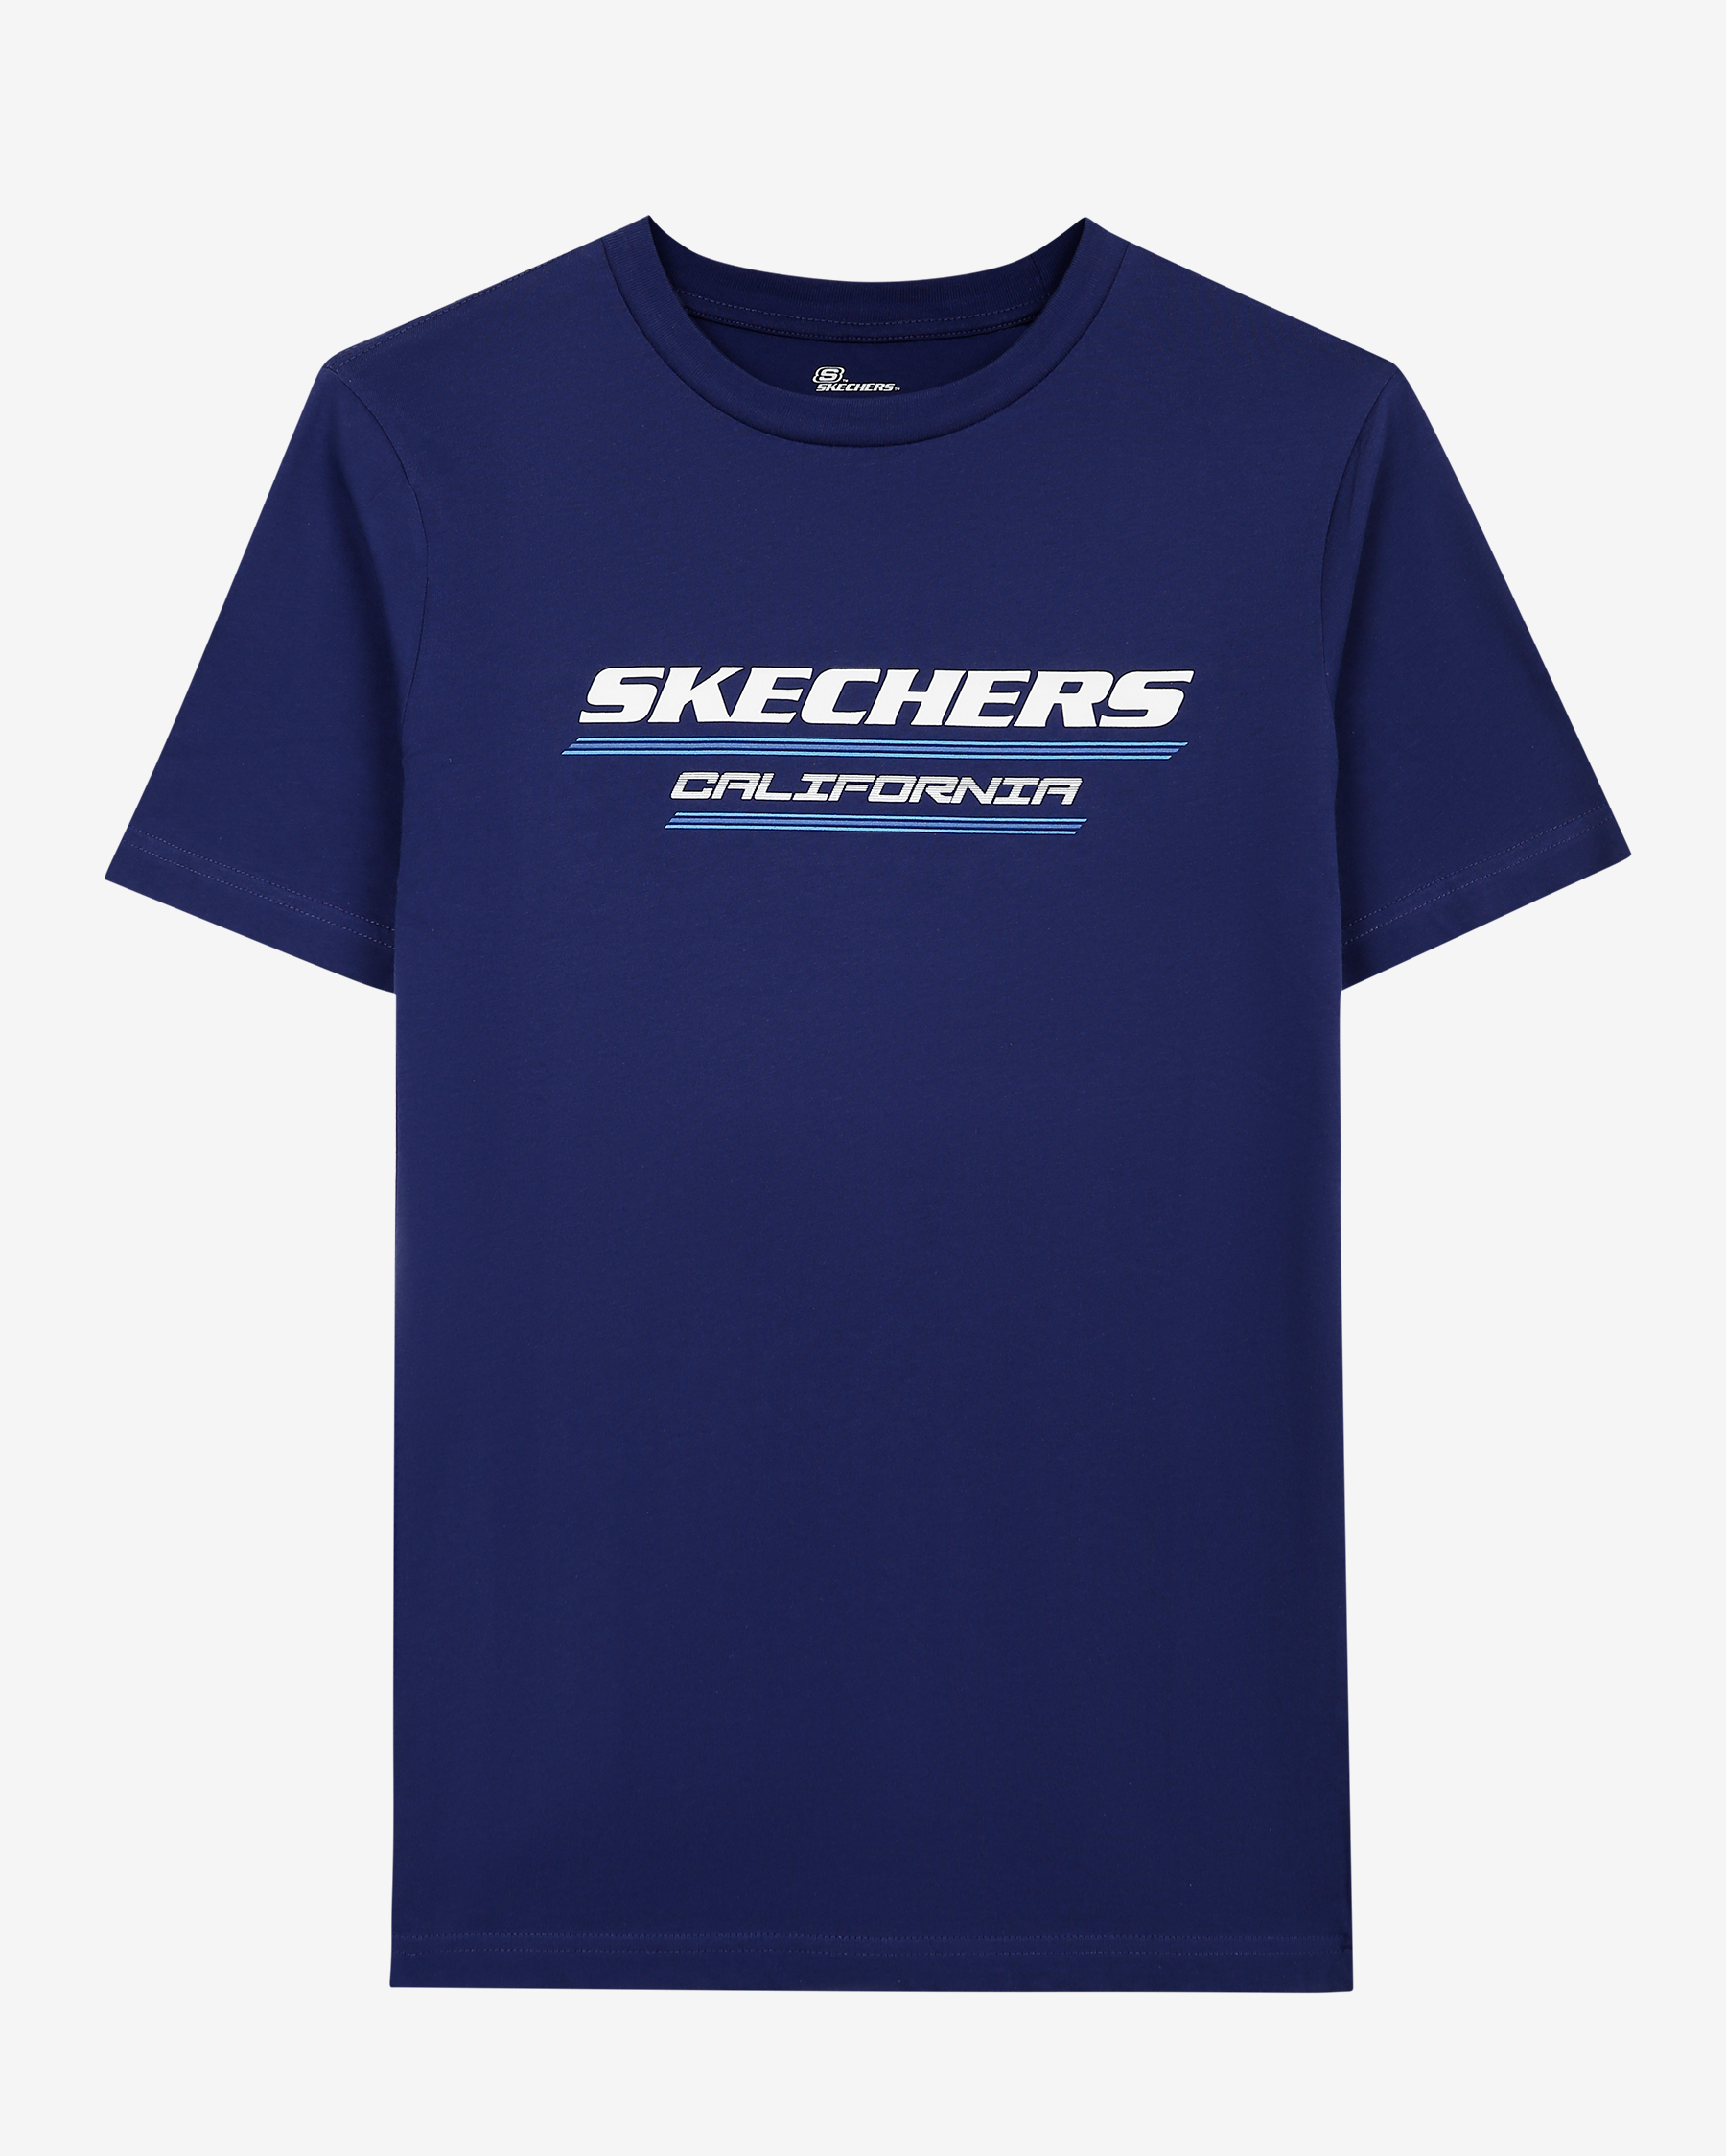 Tshirt Lacivert T-shirt M Crew Neck S231287-410 Skechers Graphic Tee Erkek